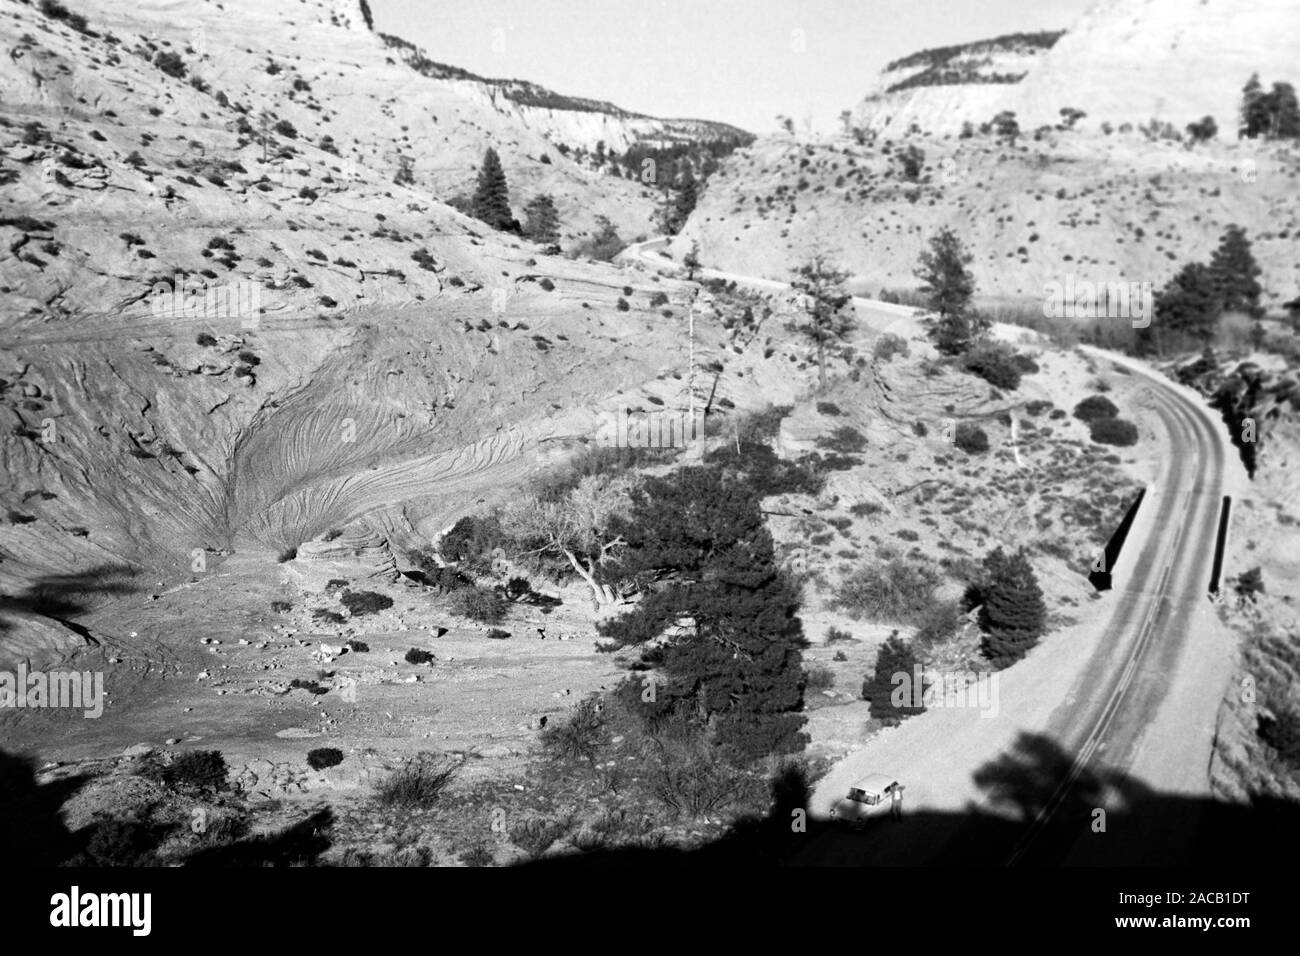 Unterwegs im Grenzgebiet Utah-Arizona bei Kanab, Mount Carmel Highway, 1968. Roadtrip around the Utah-Arizona borderline in the Kanab area, Mount Carmel Highway, 1968. Stock Photo